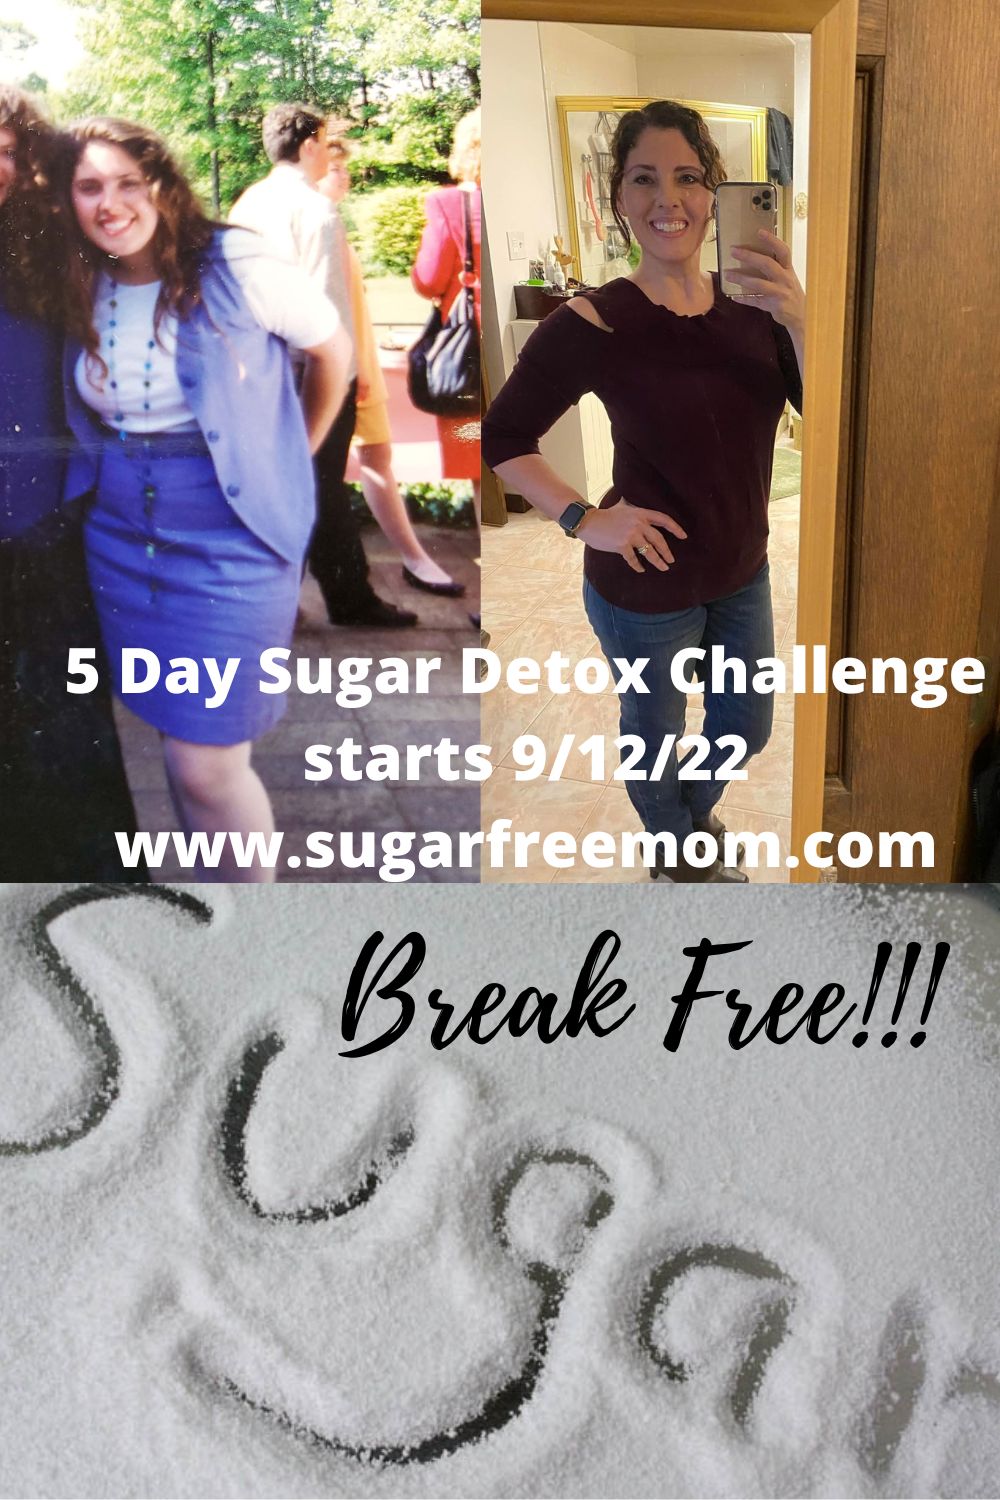 5 Day Sugar Detox Challenge starts 9/12/22